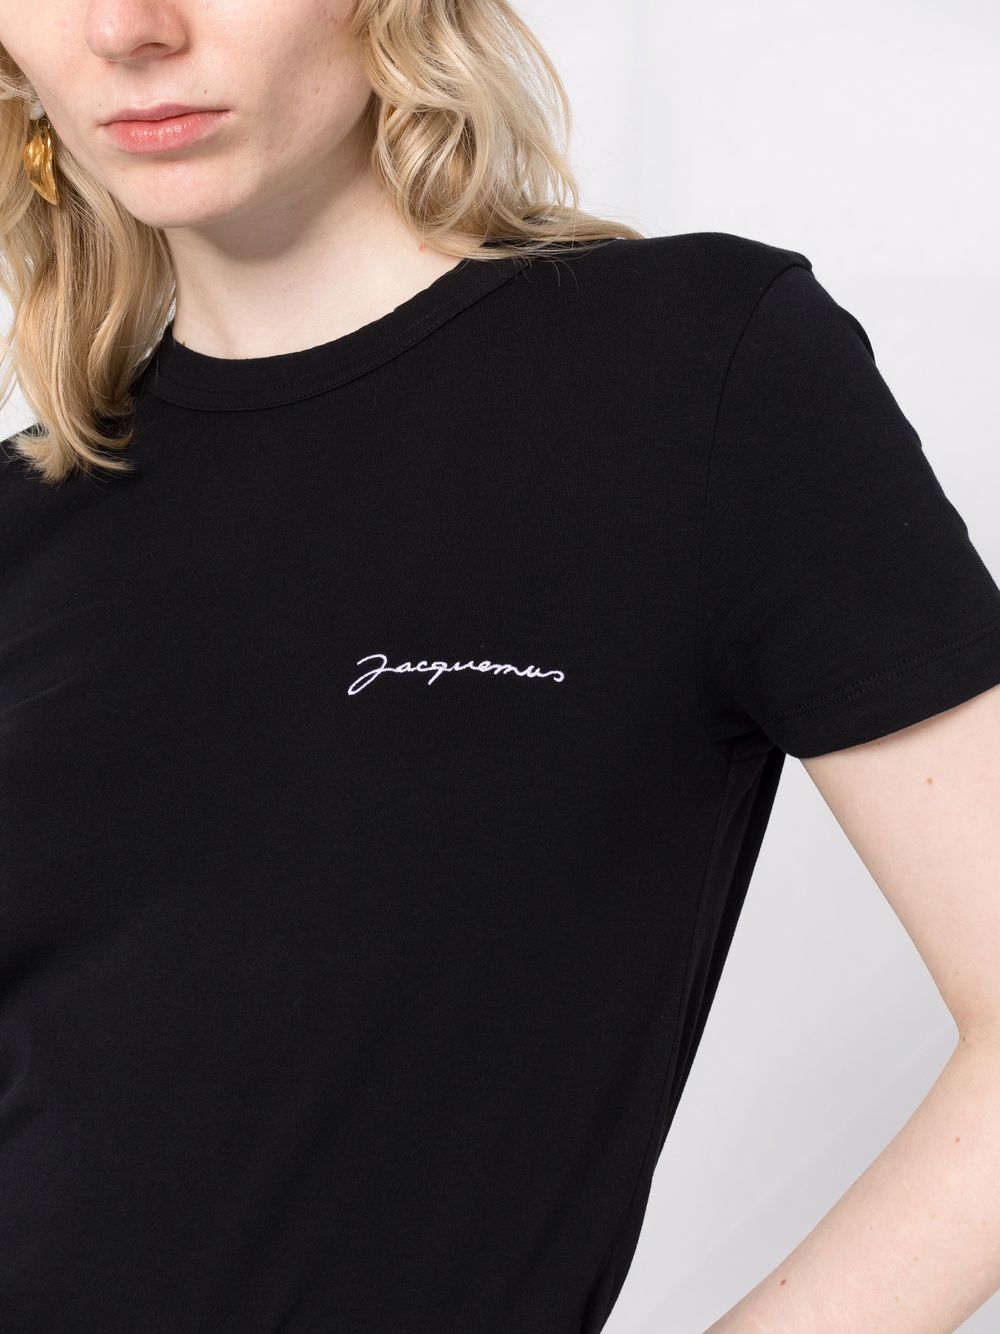 фото Jacquemus футболка с вышитым логотипом